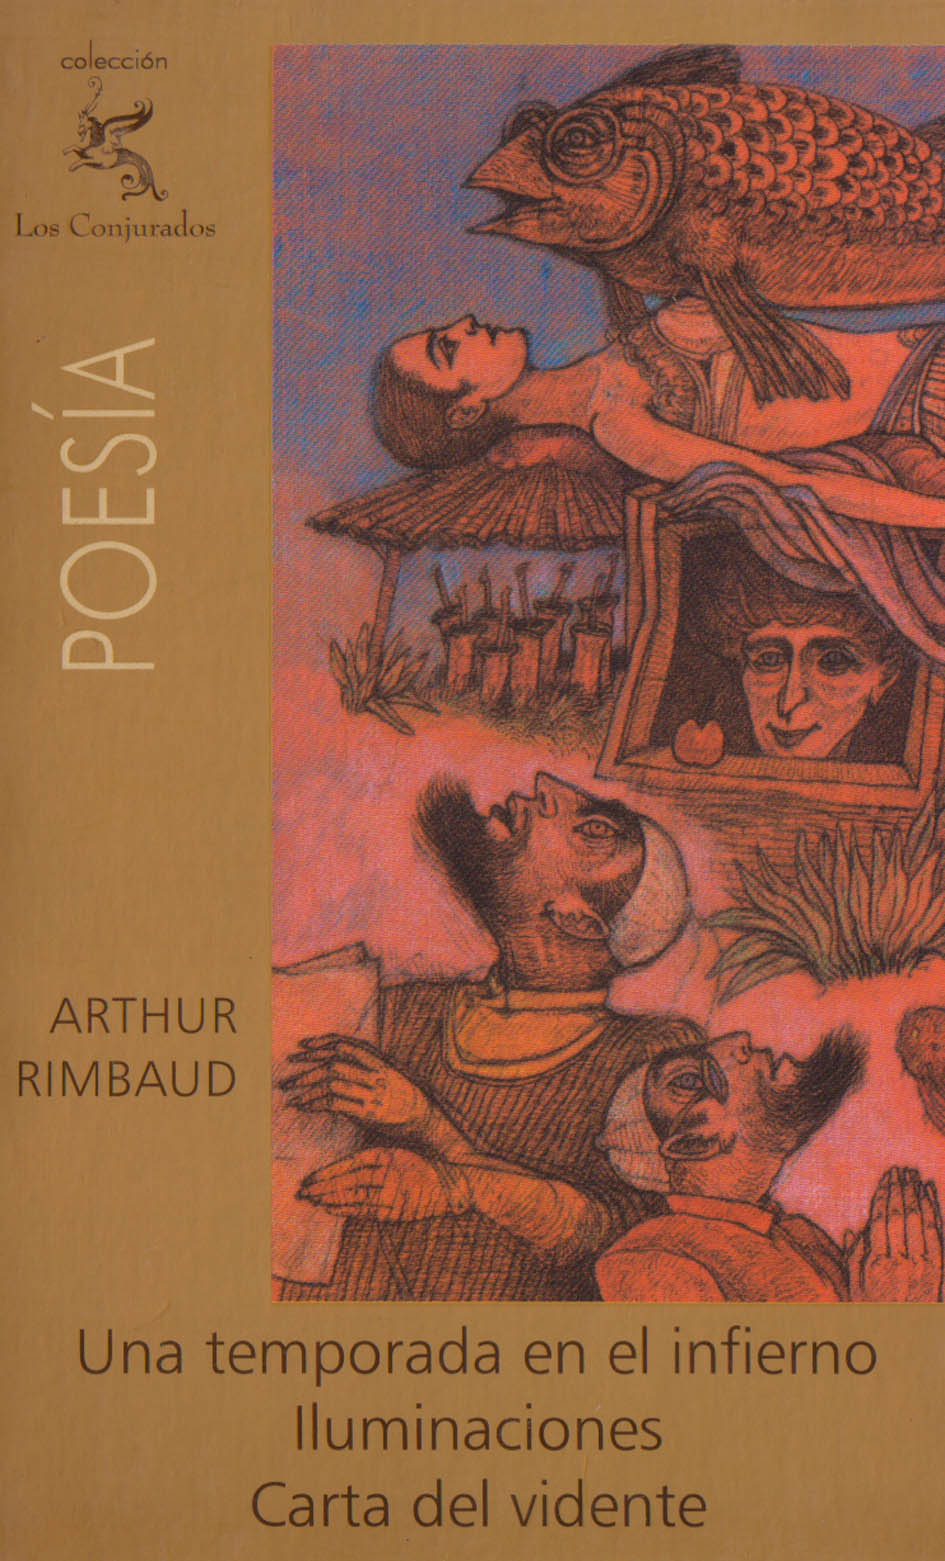 Colección Los Conjurados: Arthur Rimbaud - Una temporada 